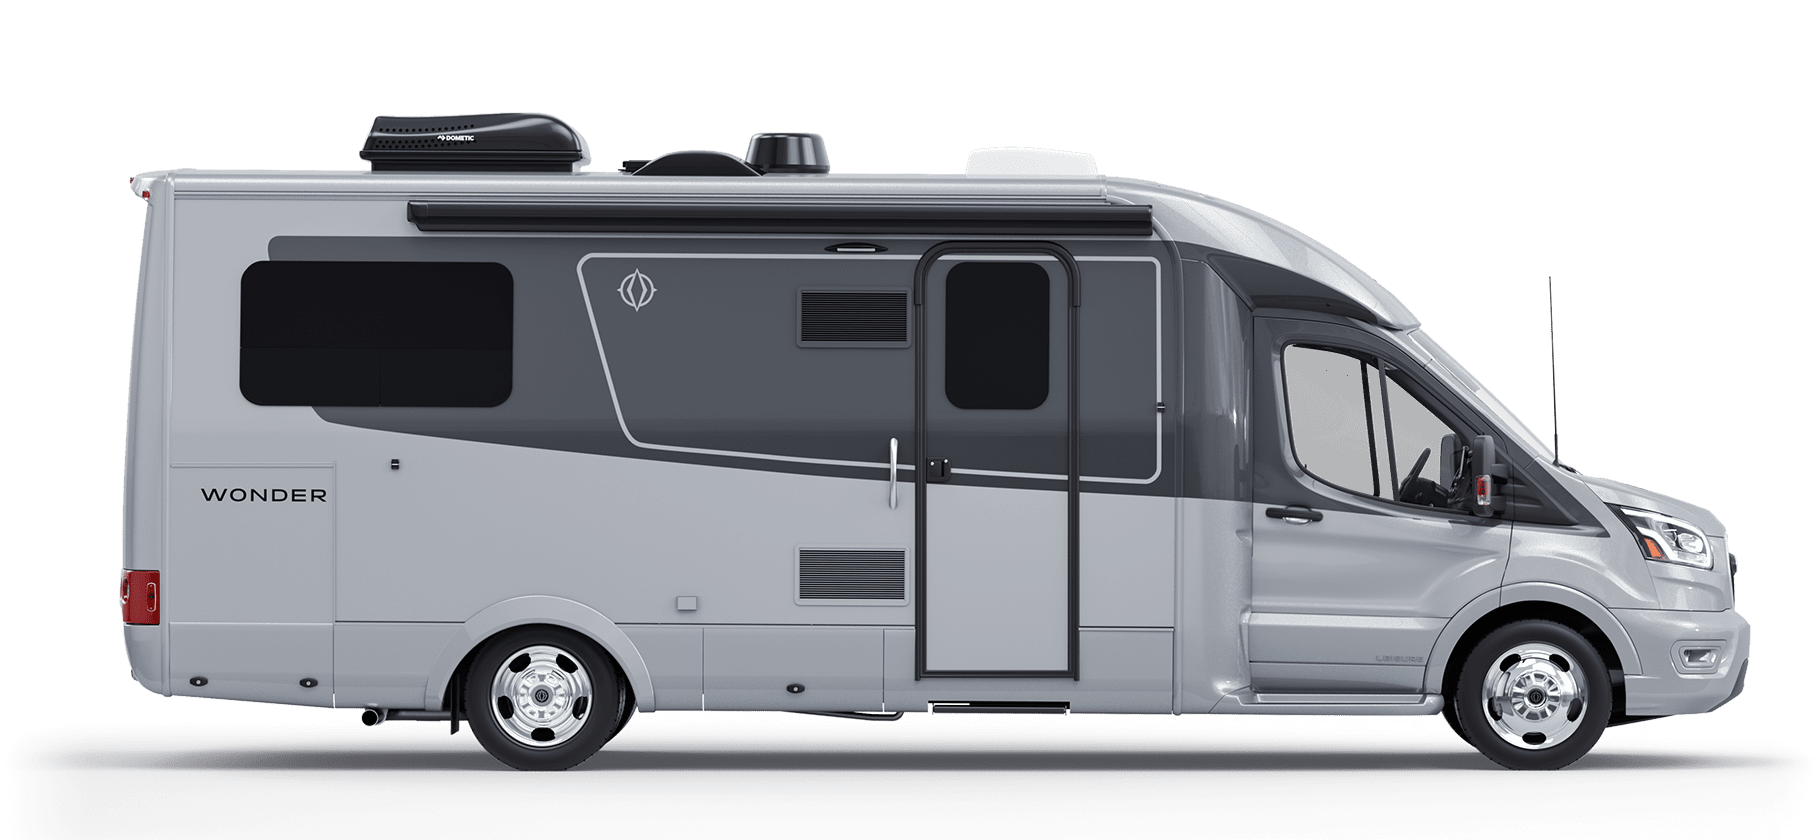 Wonder - Design - Leisure Travel Vans